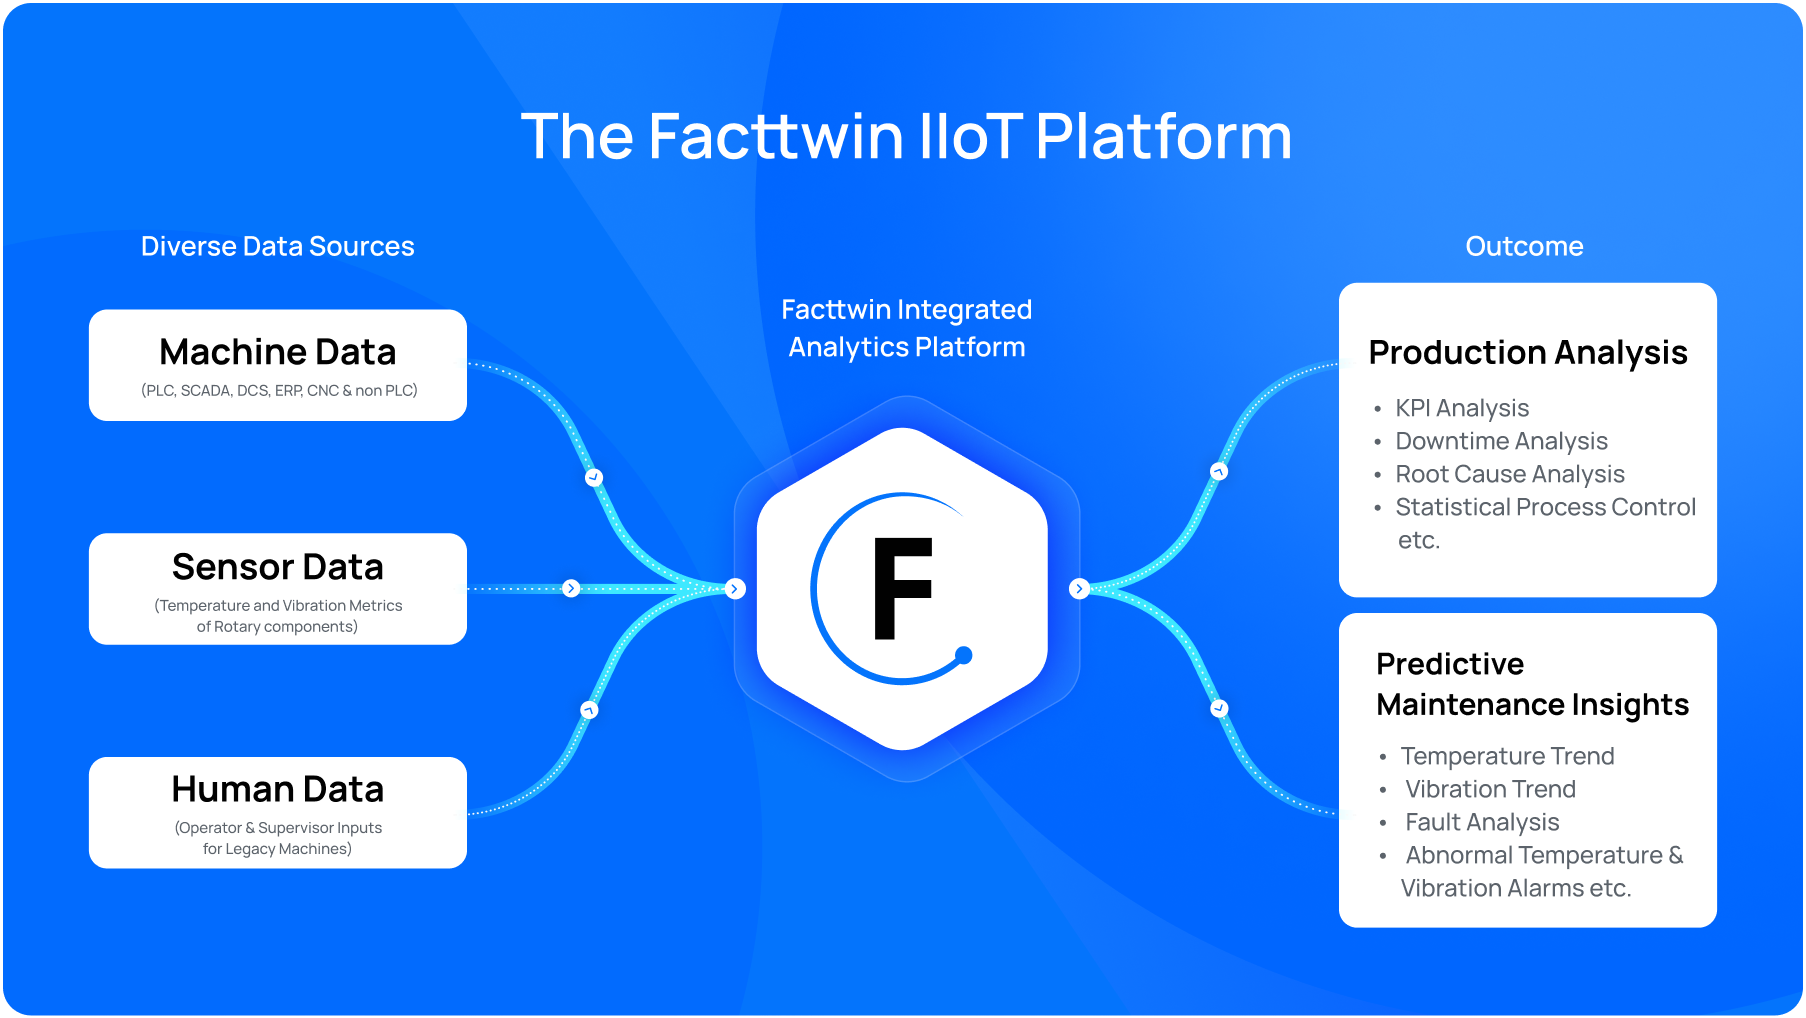 The Facttwin IIoT Platform